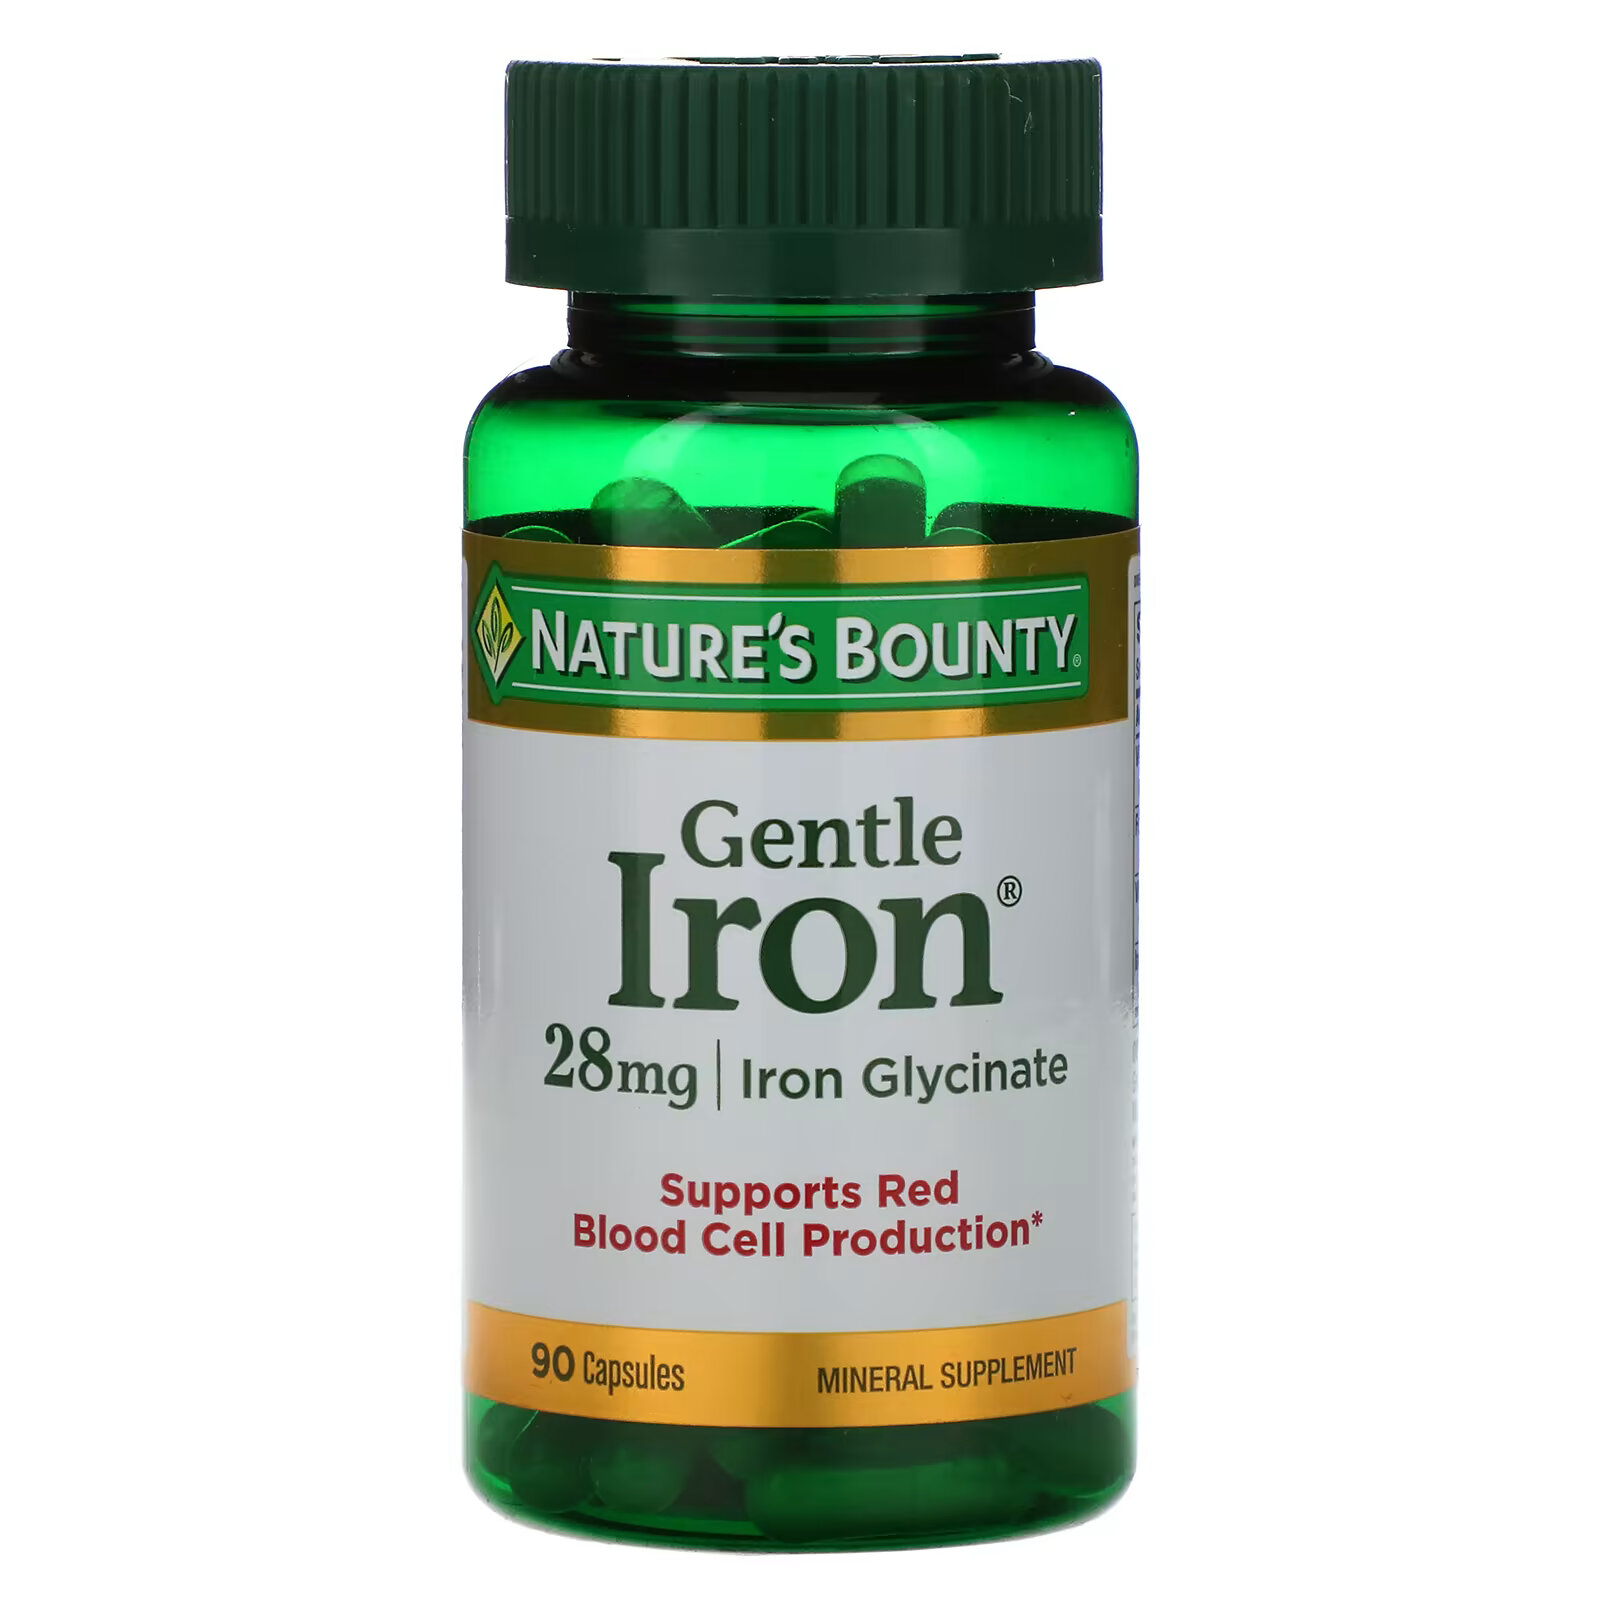 легкодоступное железо nfo fish oil gentle iron 100 шт Nature's Bounty, Gentle Iron, железо, 28 мг, 90 капсул